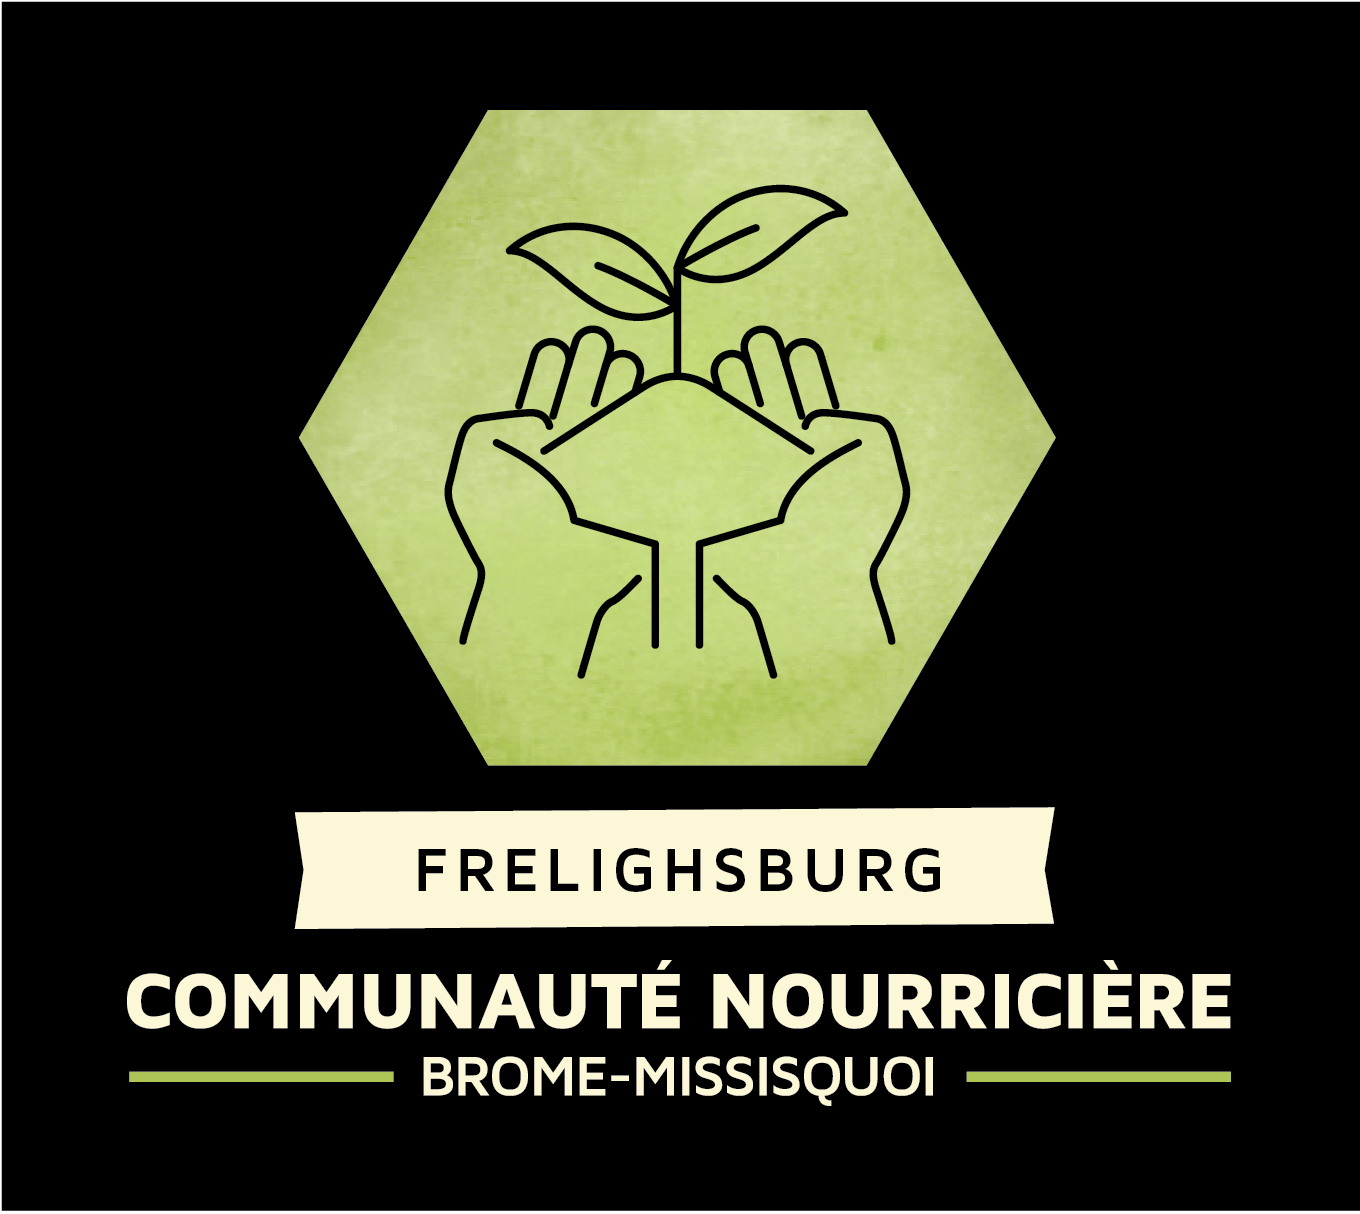 Developing Frelighsburg’s Nurturing Community - SURVEY